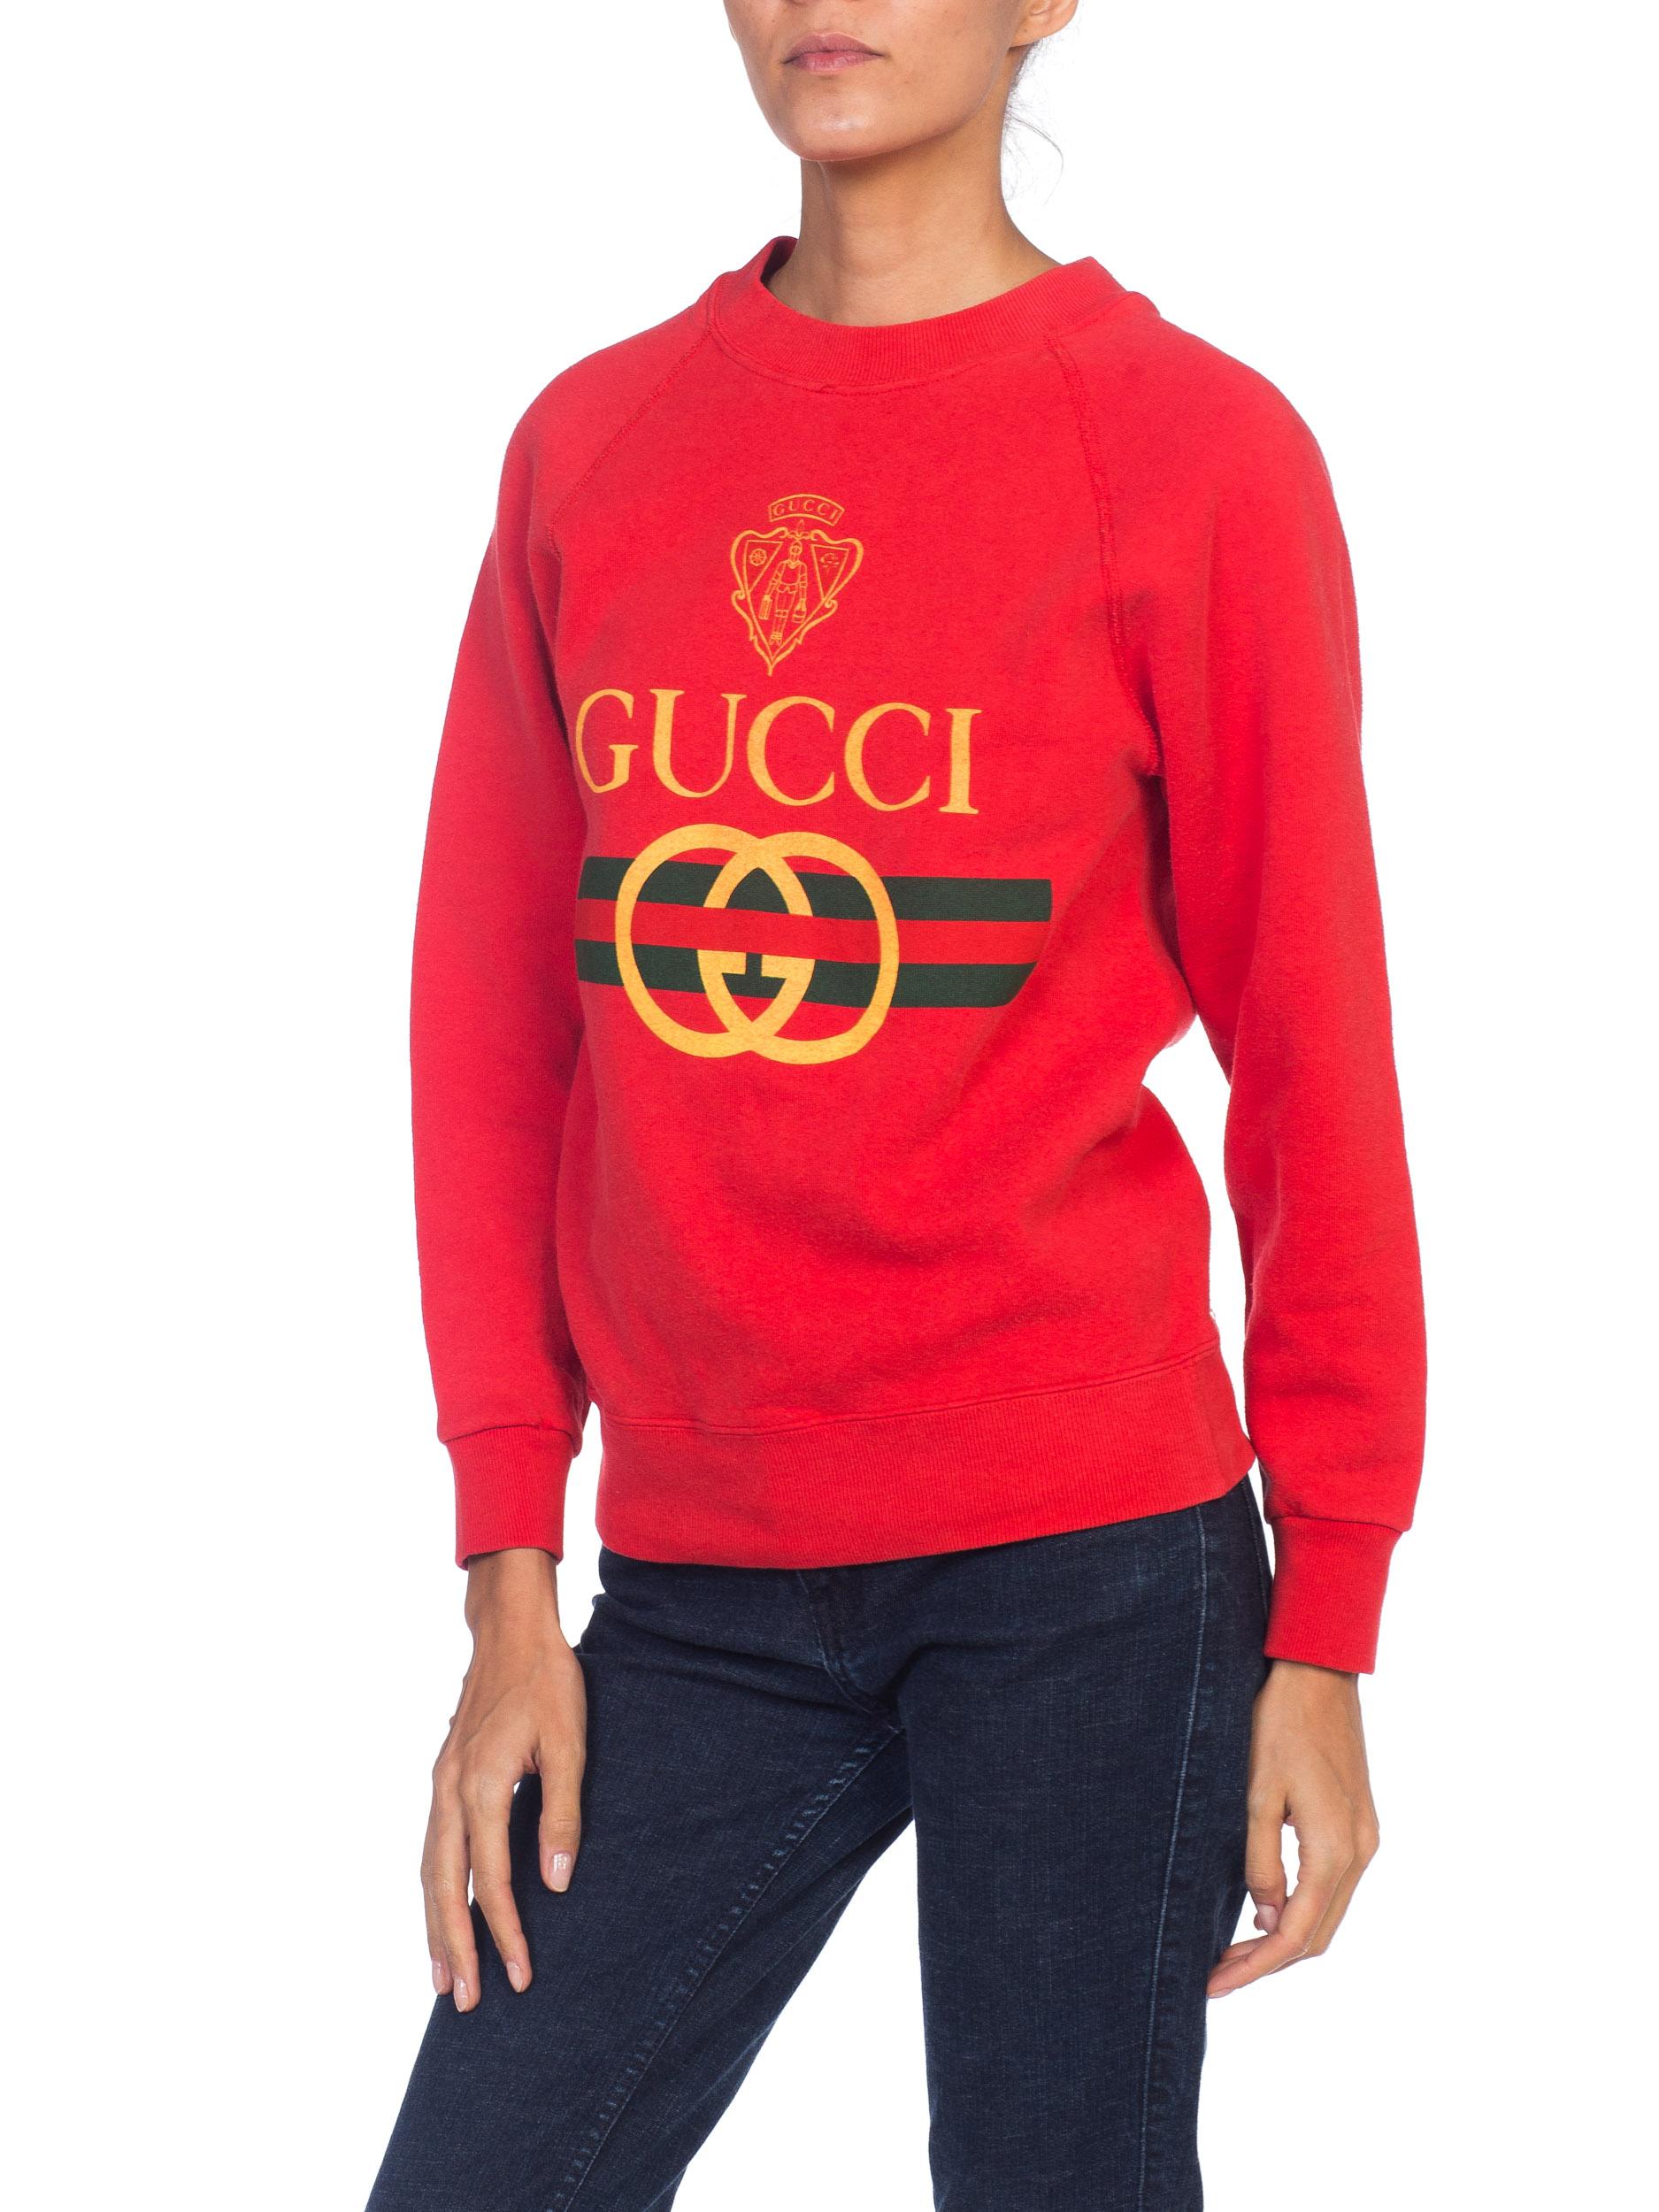 Women's or Men's 1980s Red Bootleg Gucci Sweatshirt